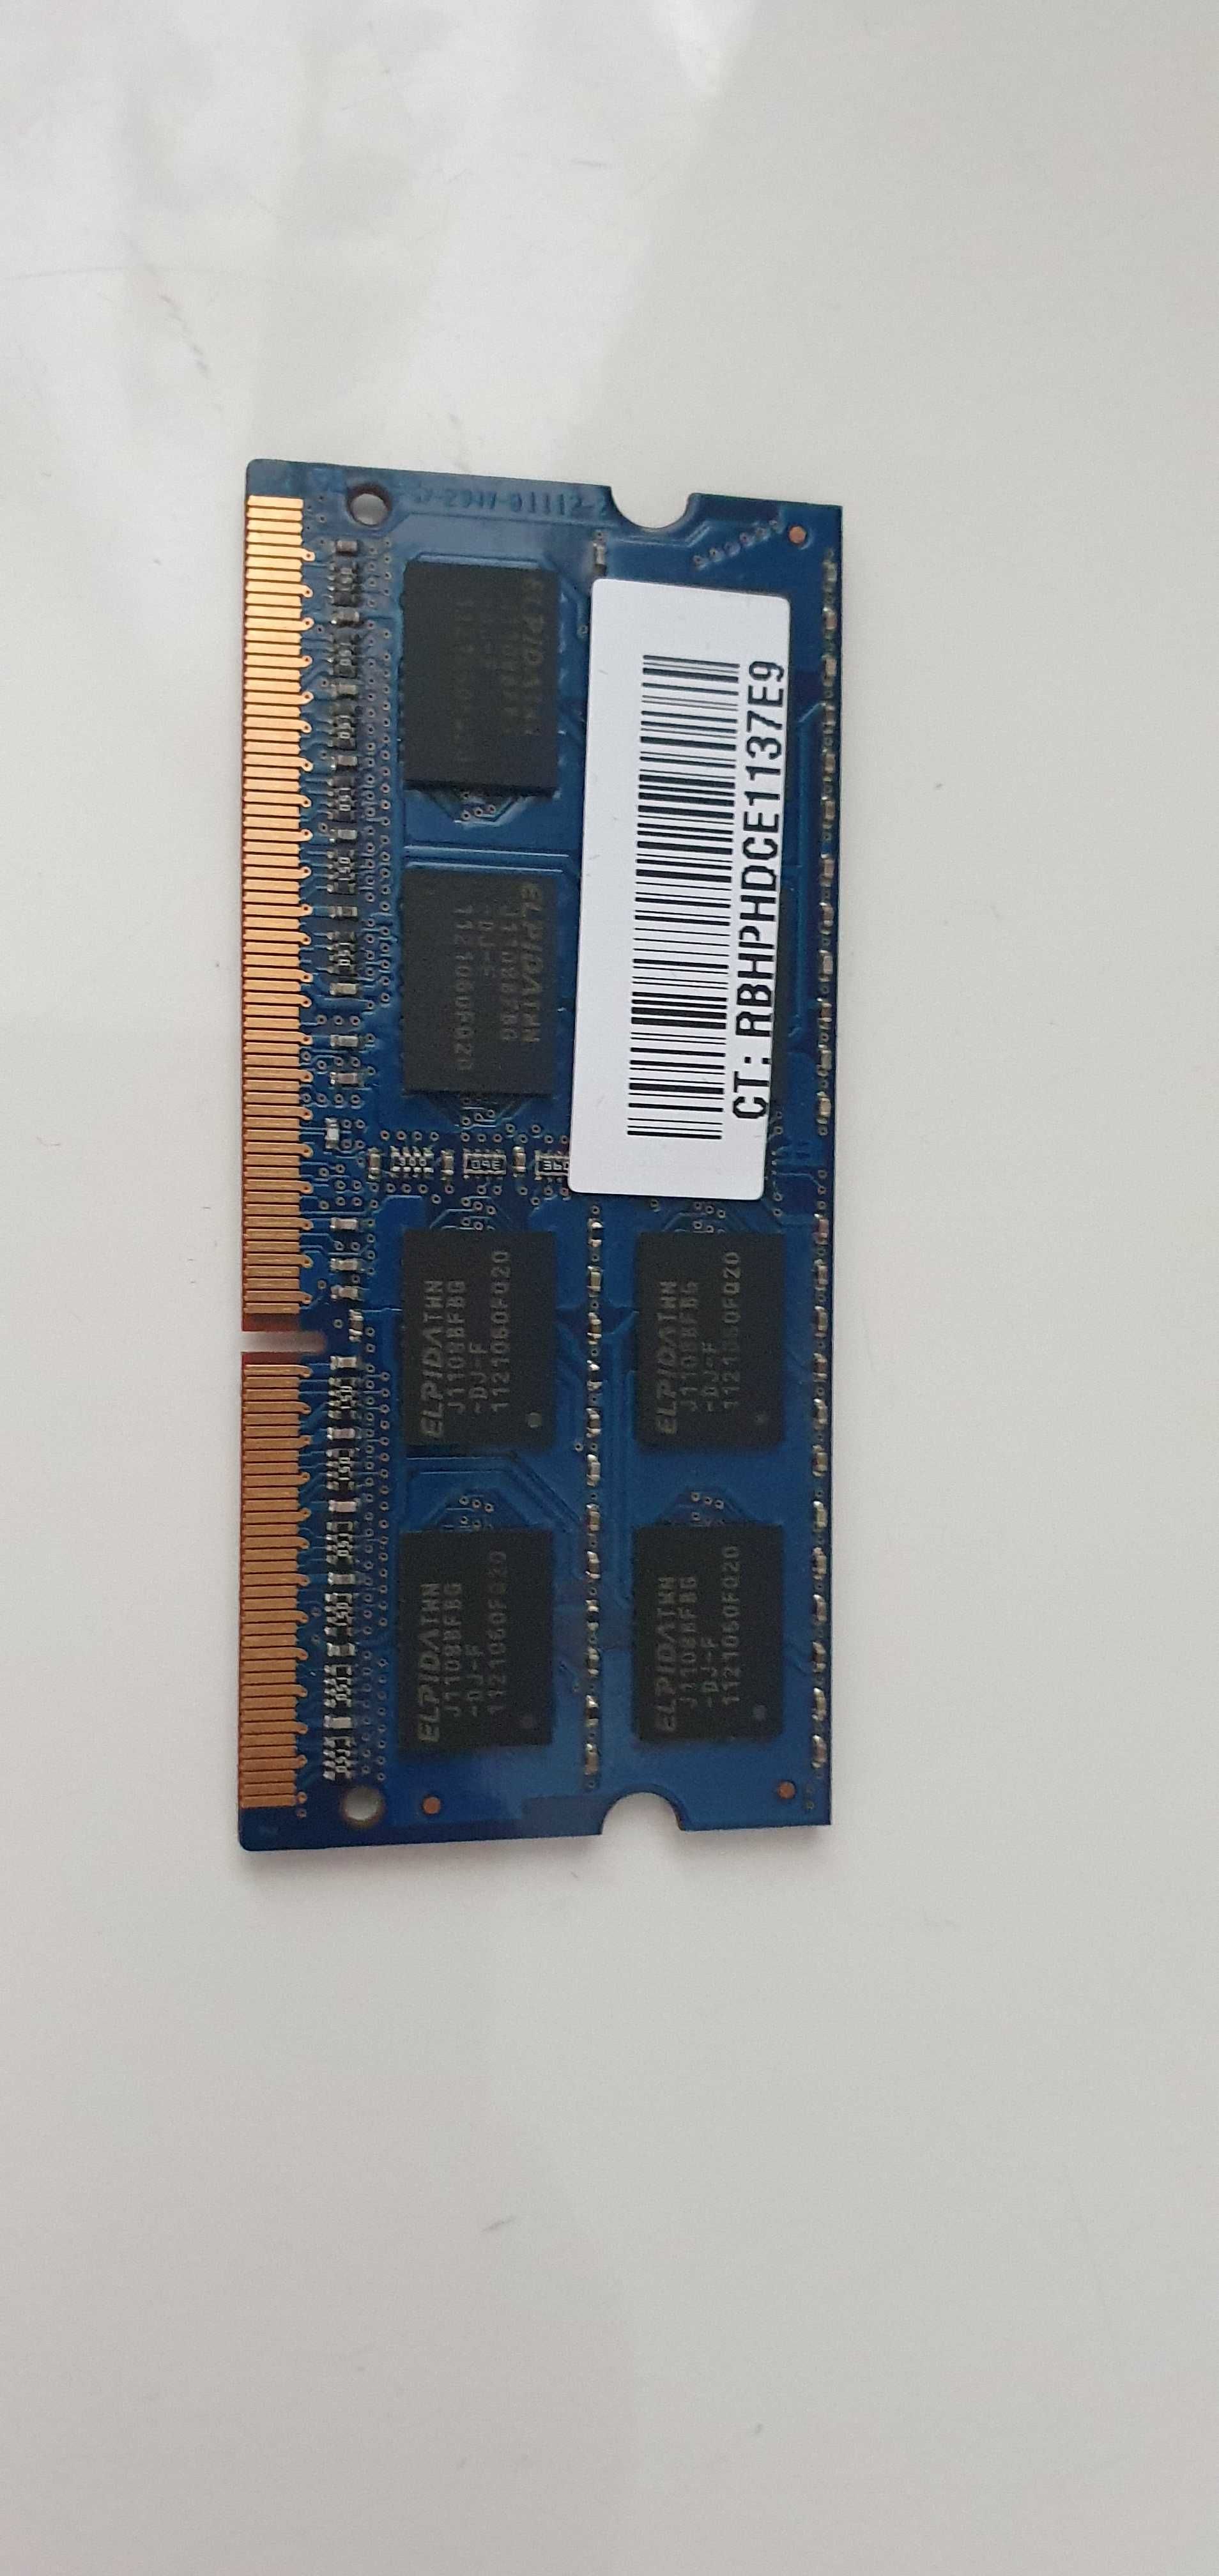 Oзу для ноутбука  2GB DDR 3 SODIMM